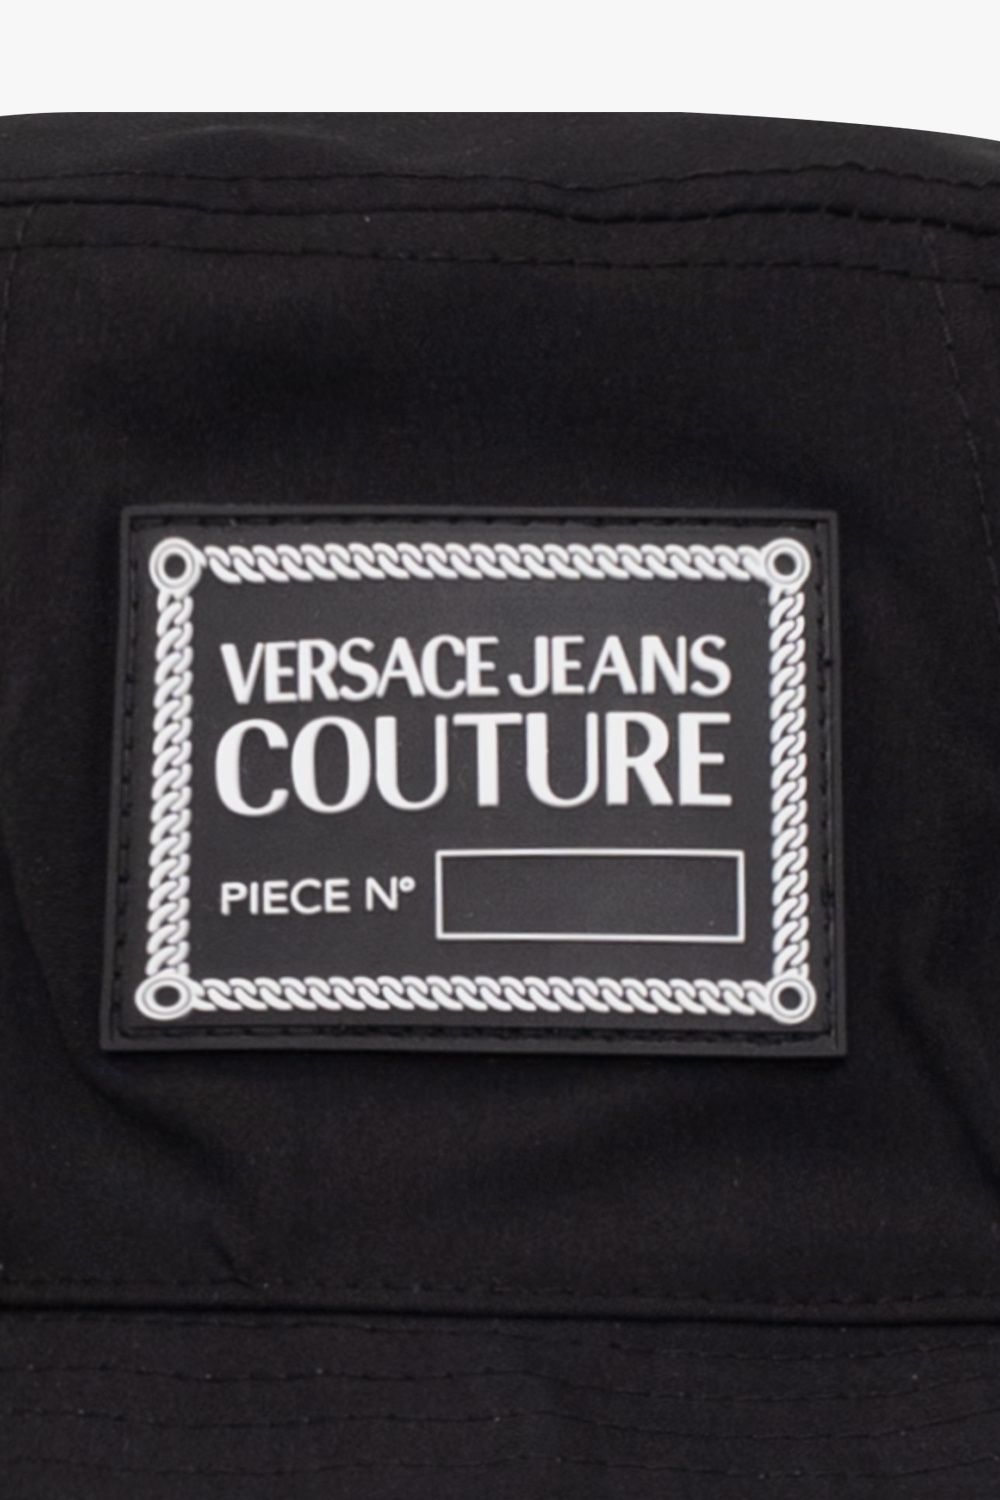 Versace Jeans Couture Cap Toe Pumps